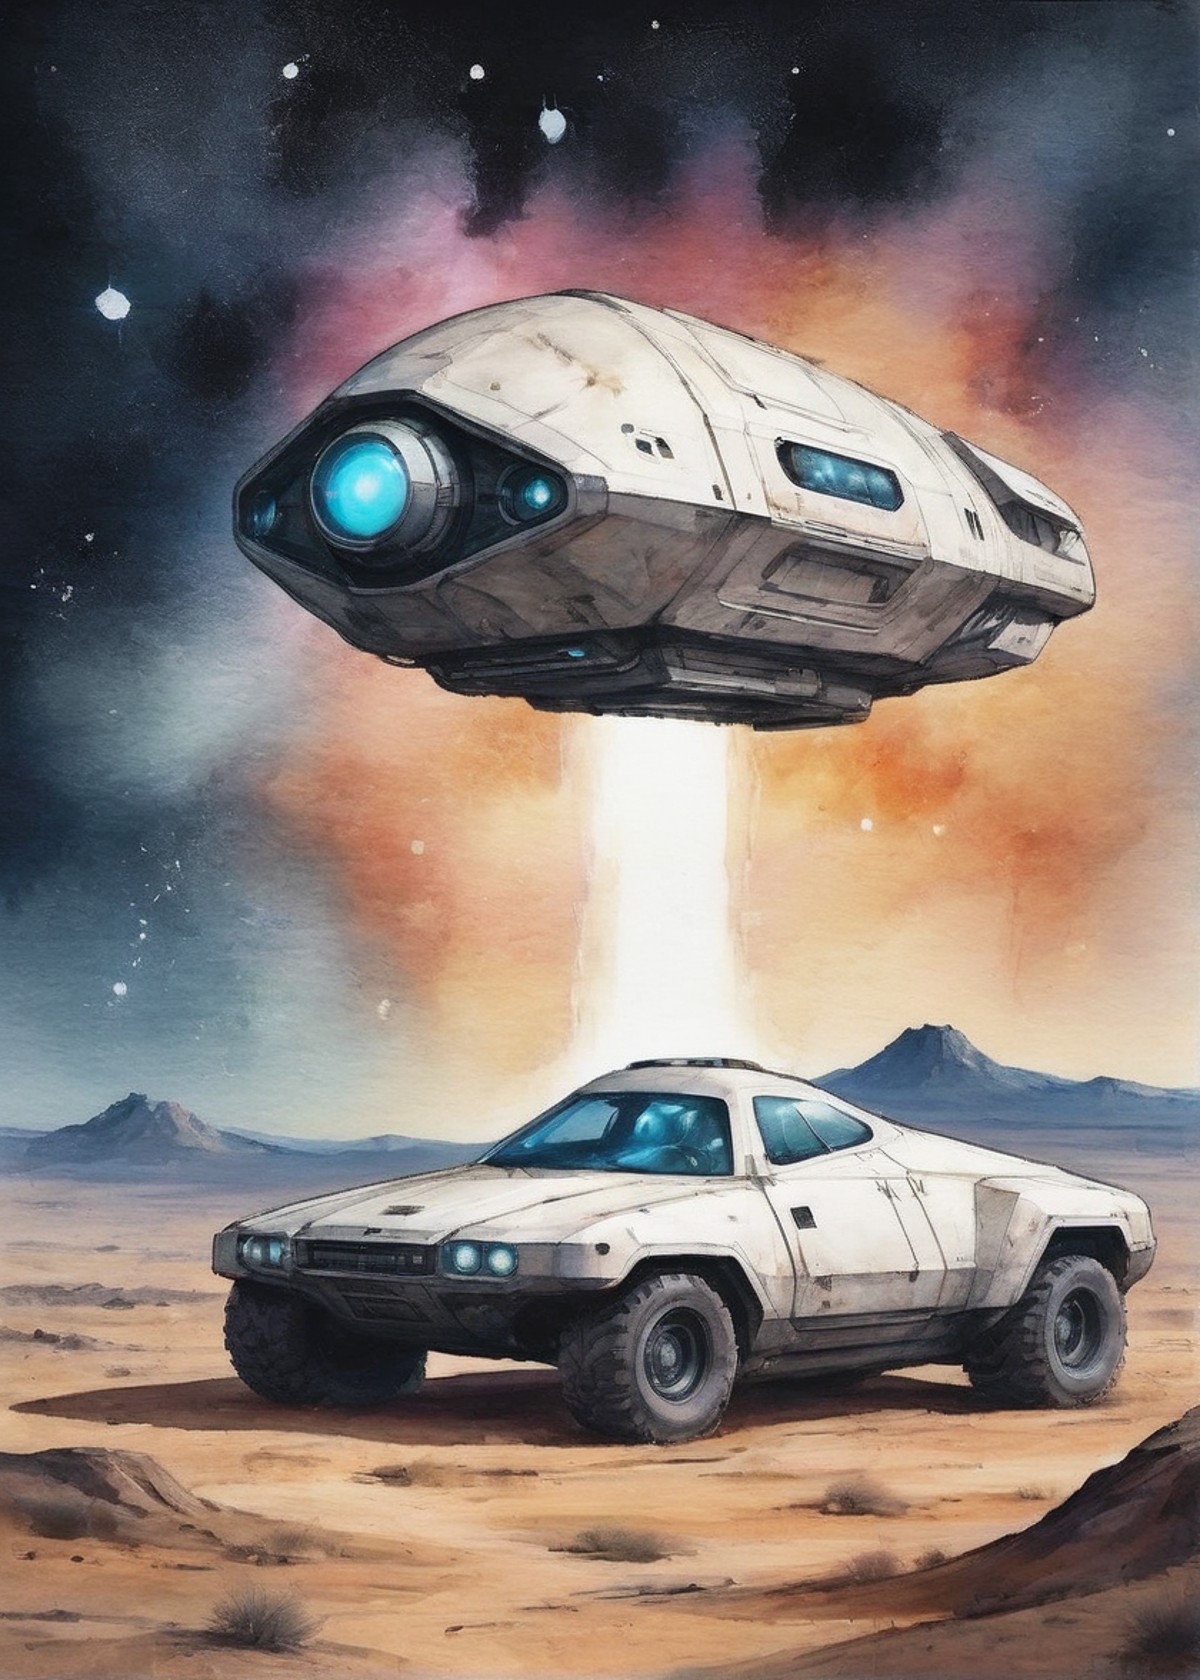 sci-fi research-explorer peculiar futuristic vehicle on a flat plain barren land under stars and nebulae with a massive ri...